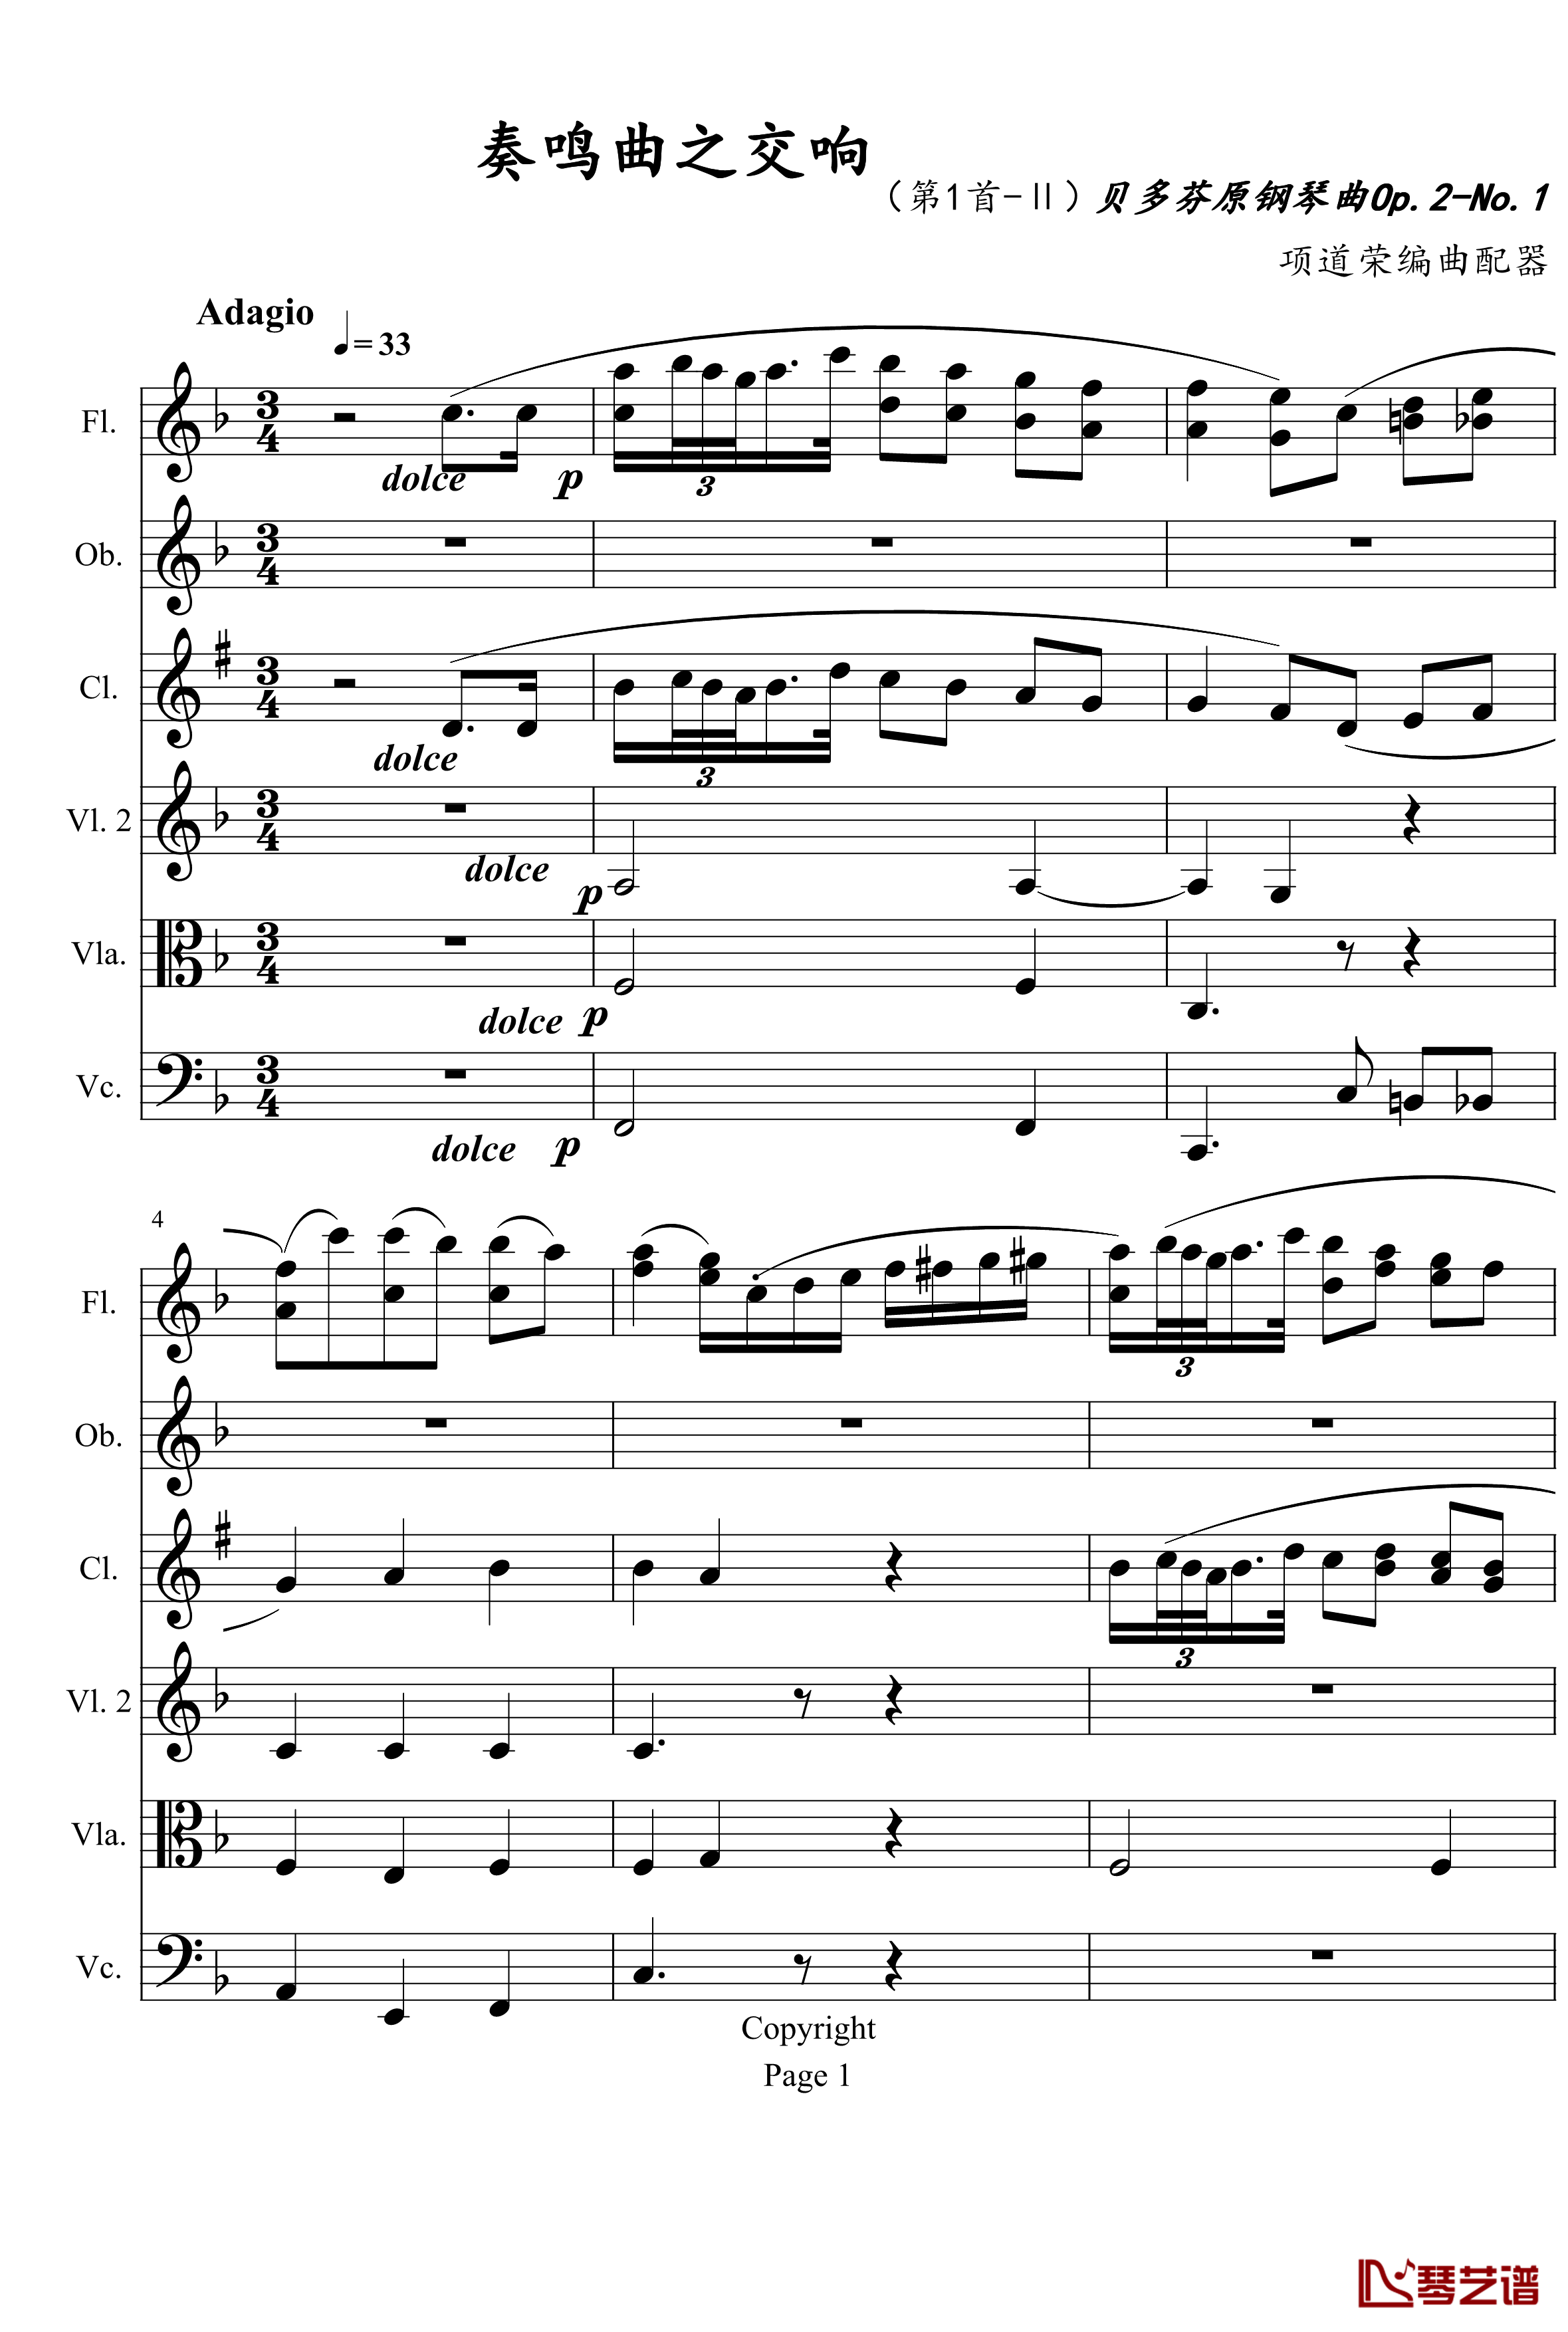 奏鸣曲之交响钢琴谱-第1首-Ⅱ-贝多芬-beethoven1